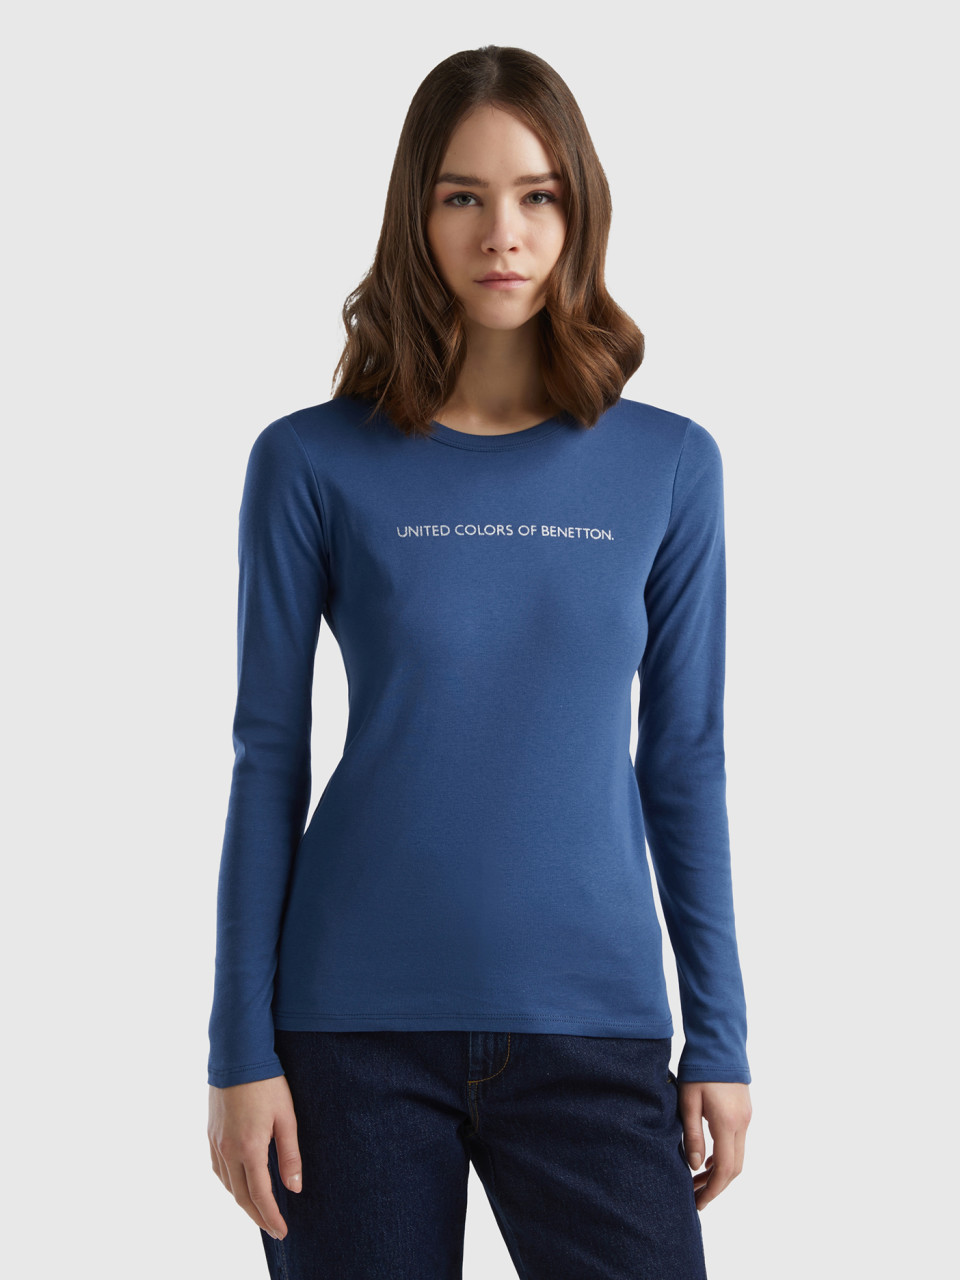 Benetton, Air Force Blue 100% Cotton Long Sleeve T-shirt, Air Force Blue, Women